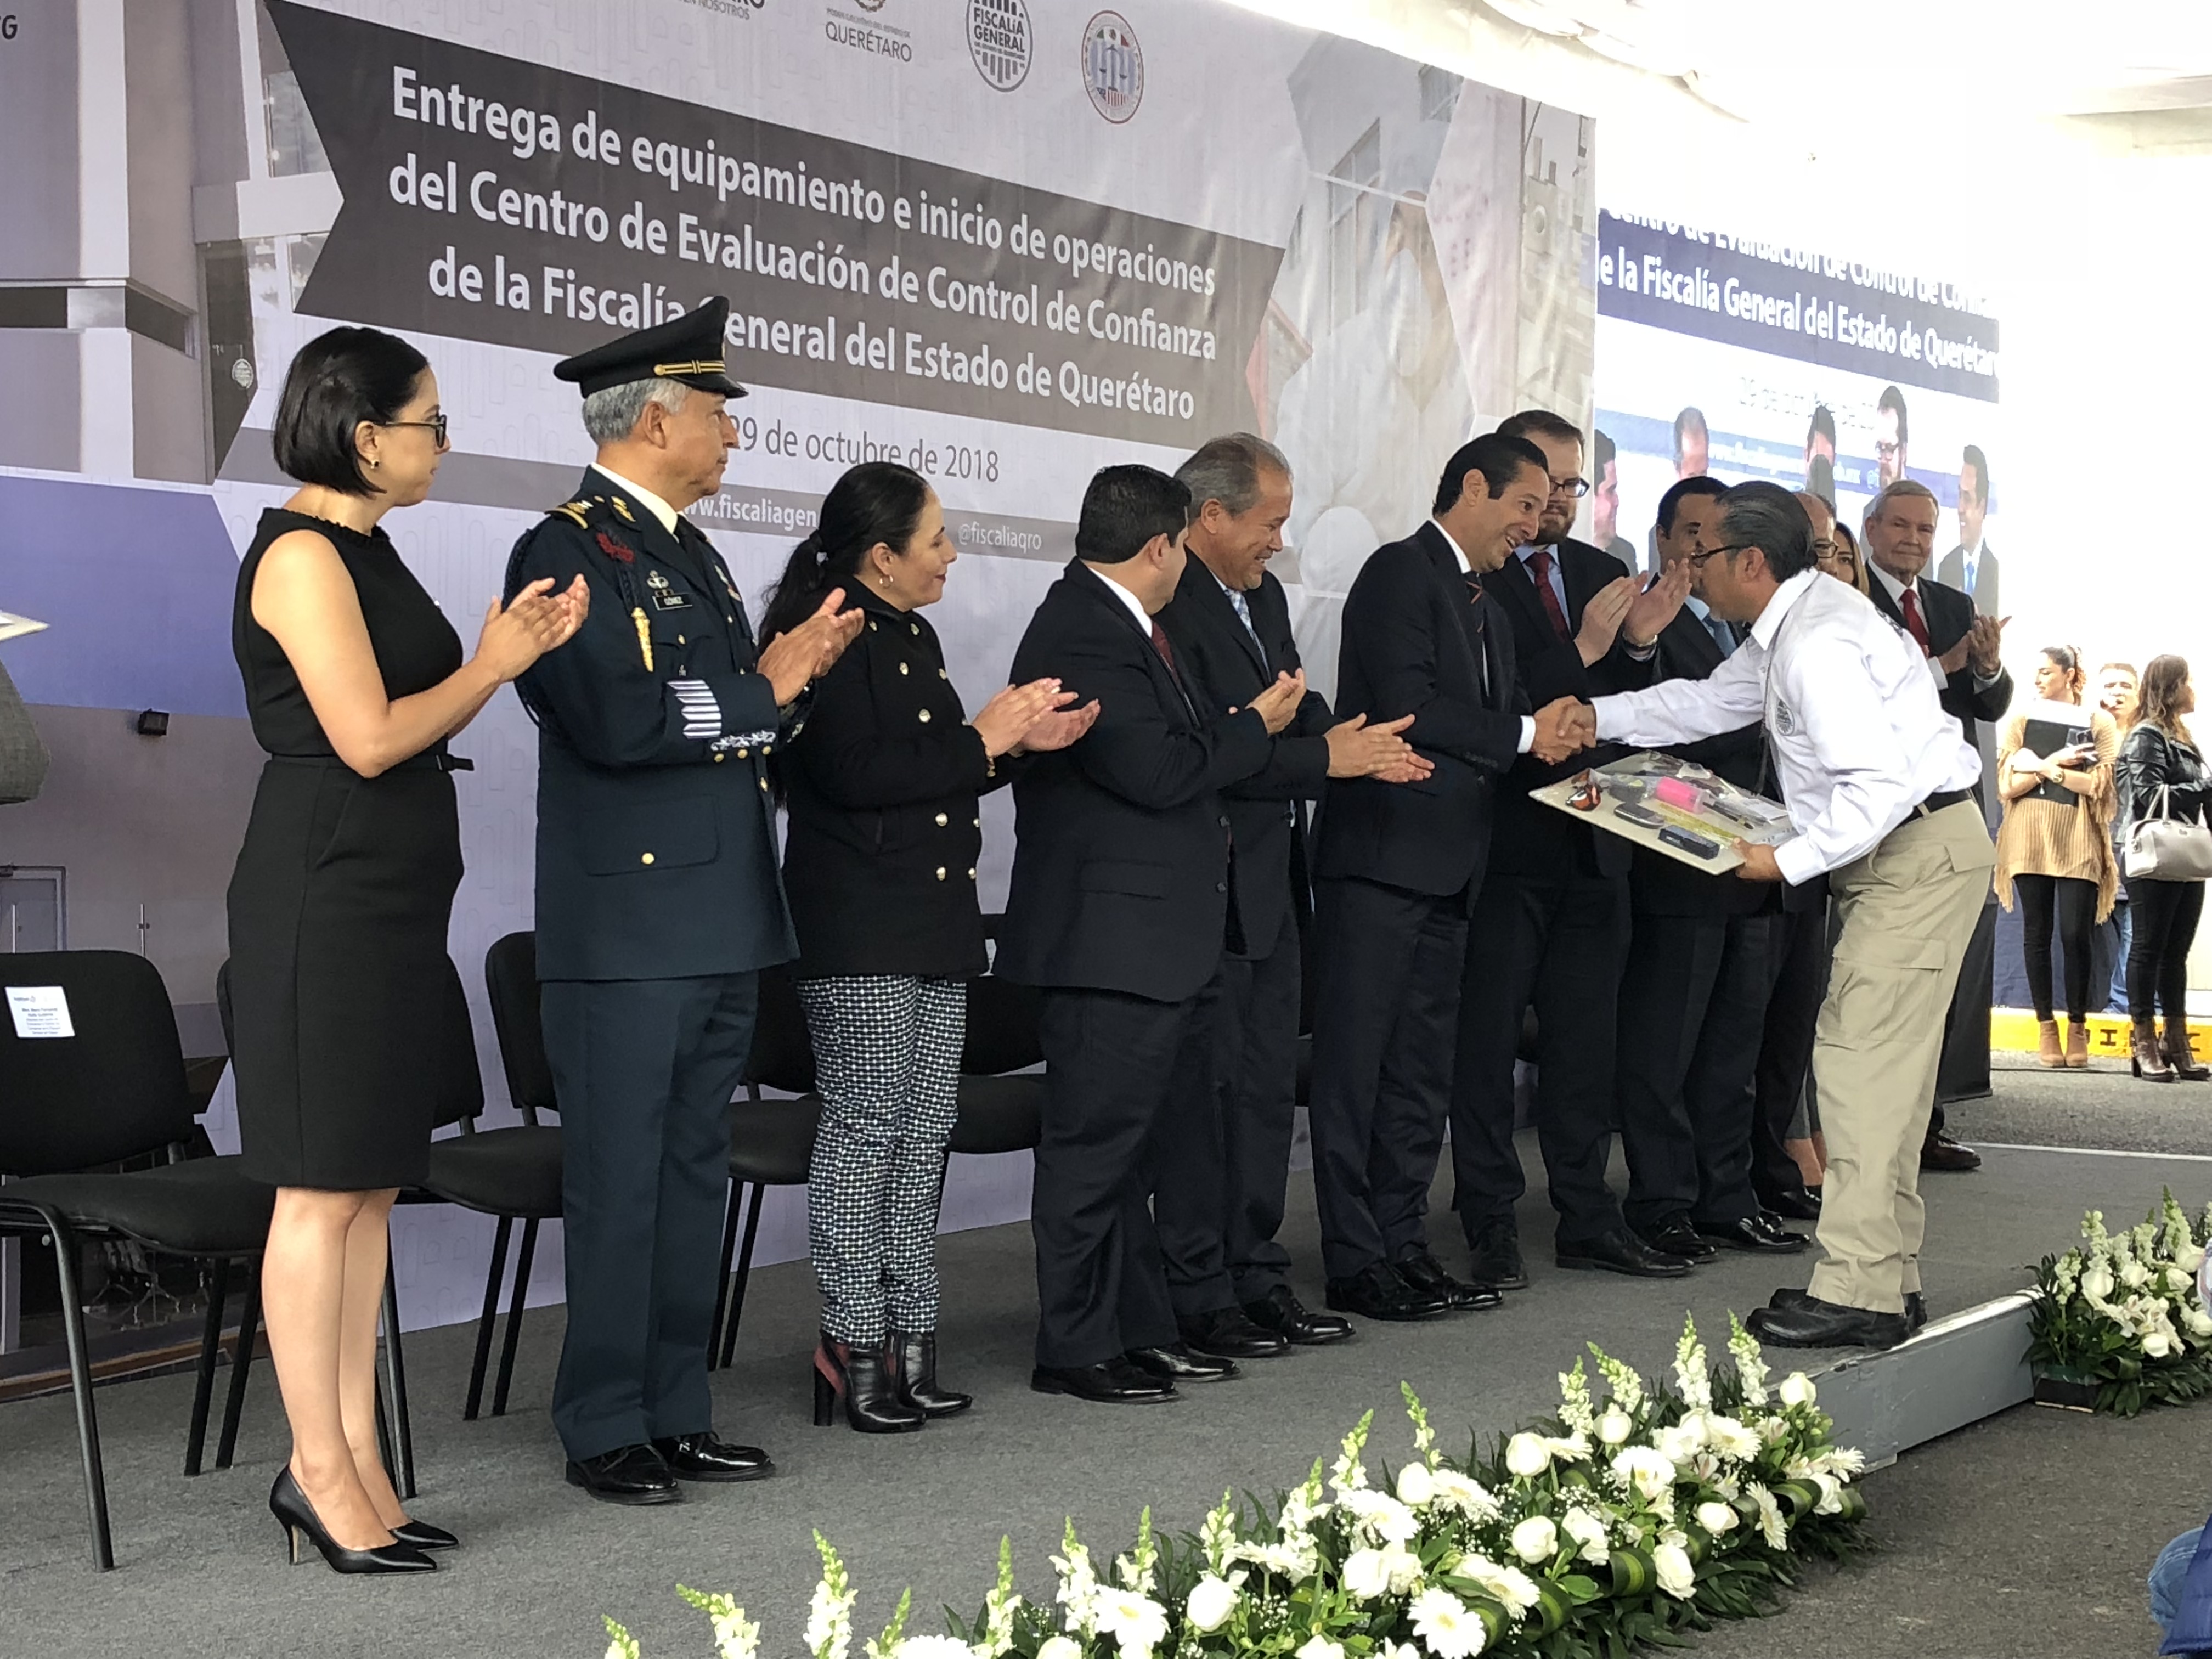  Esclarece Fiscalía hasta el 73% de los homicidios en Querétaro, destaca Pancho Domínguez